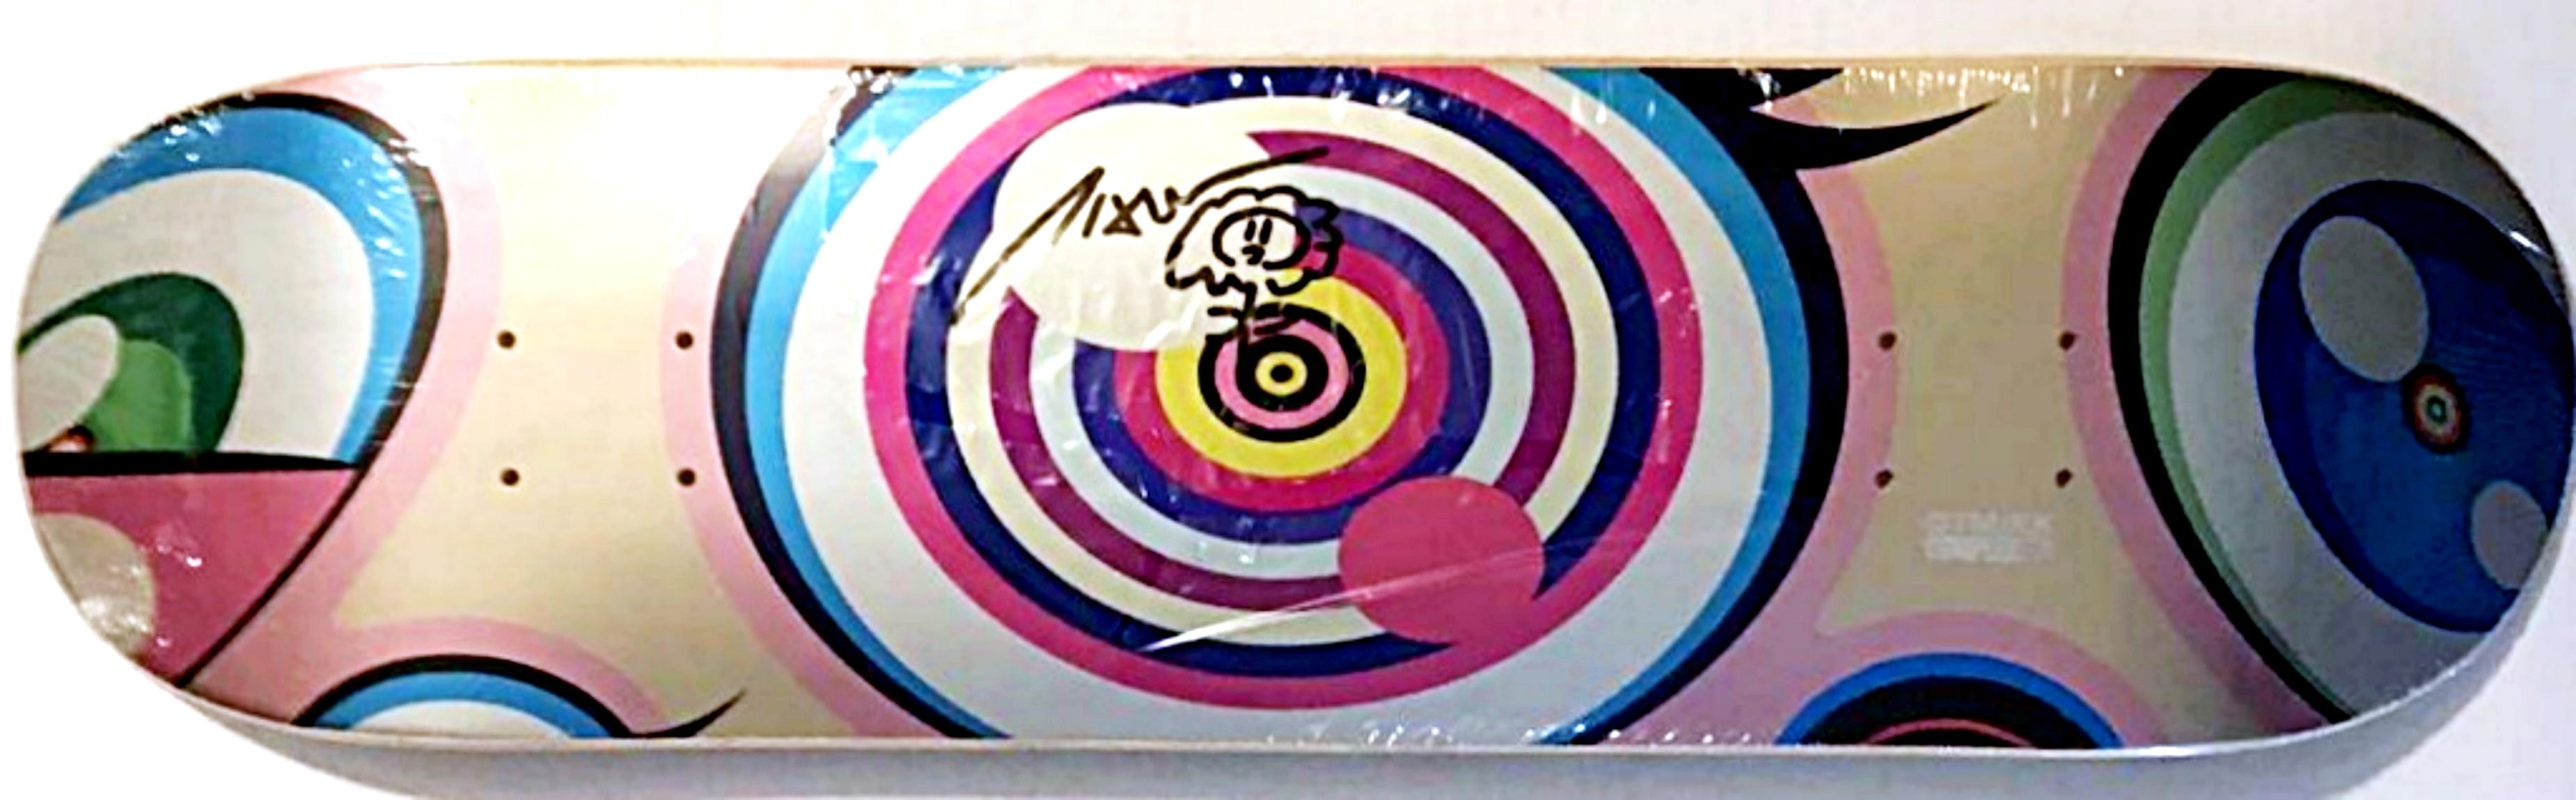 Original einzigartige signierte Blumenzeichnung, limitierte Auflage, Skateboard Street Pop Art 